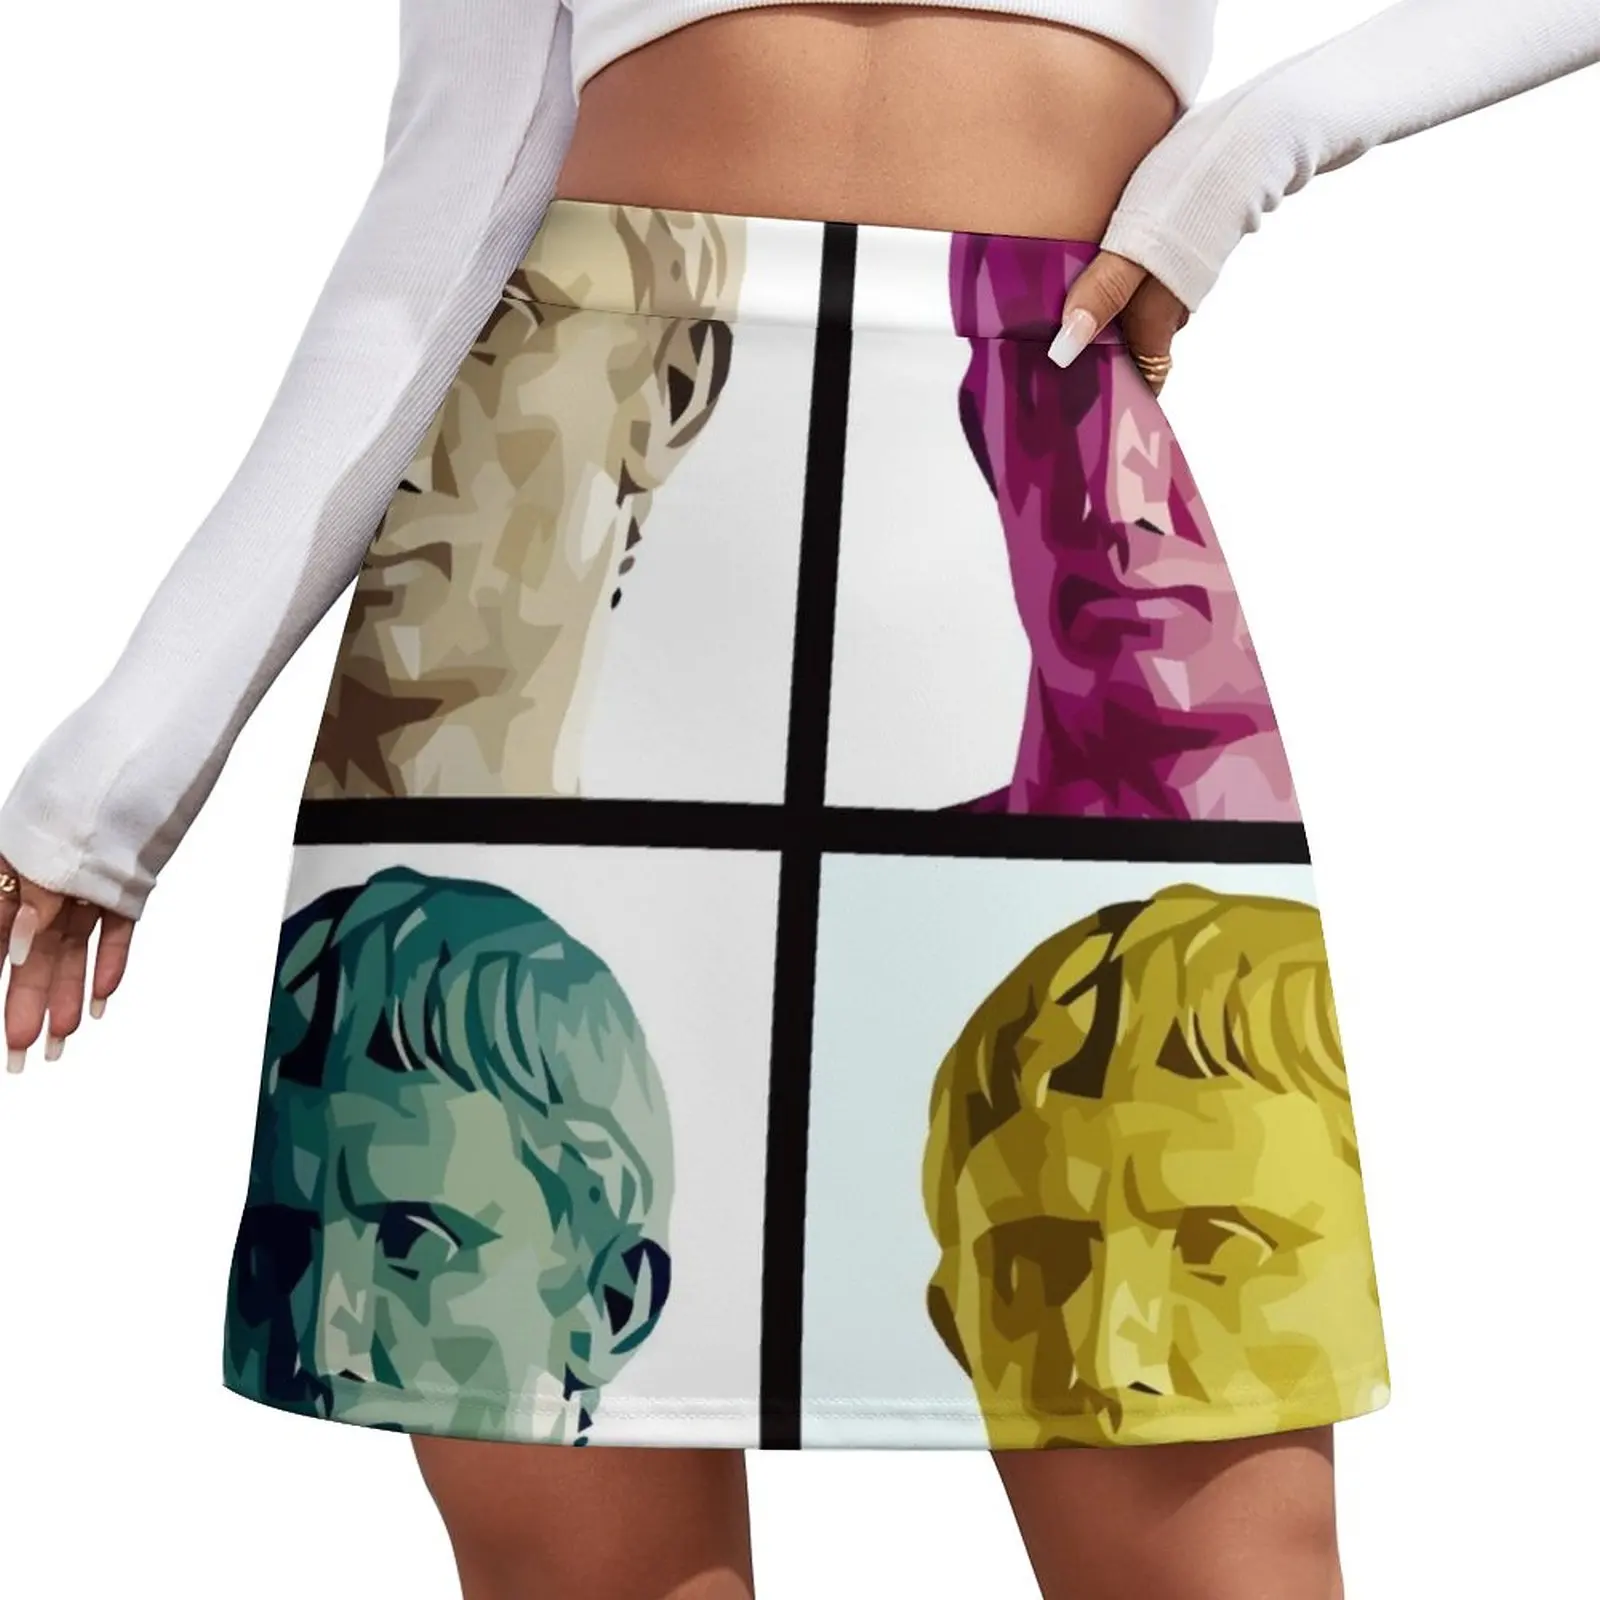 Imperator Augustus pop art Mini Skirt mini skirt for women Clothing female skirts for womans Women's skirts